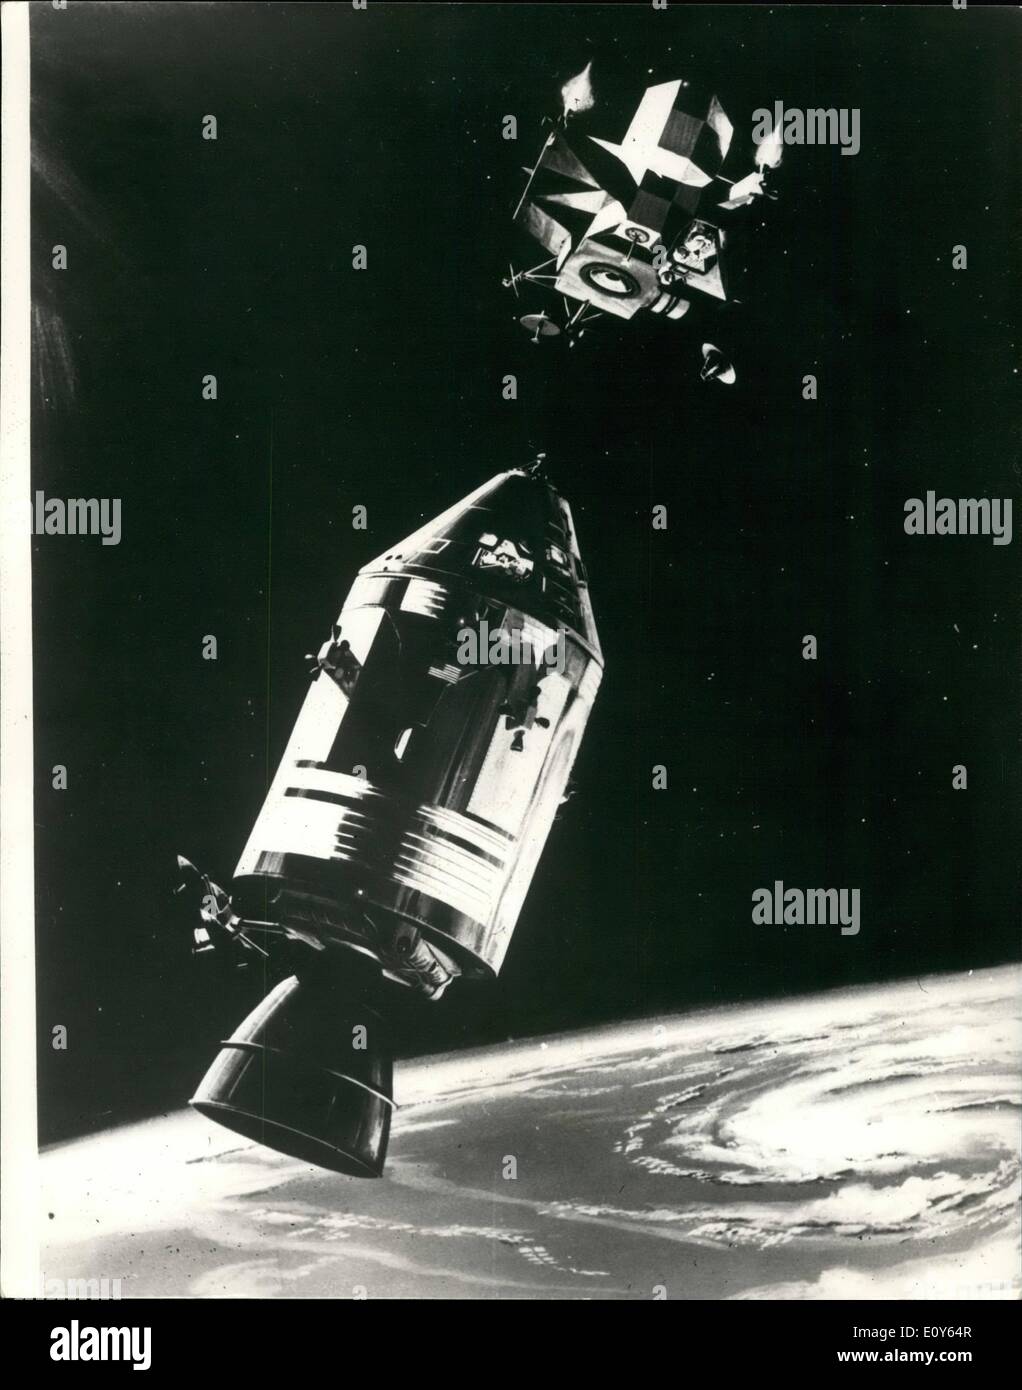 3. März 1969 - Apollo Crew alles eingestellt. Das Apollo-9 Raumfahrt aussehen alle ausziehen - die drei Astronauten James McDivitt, David Scott und Russell Schweickart scheinen ihre Erkältungen abgeschüttelt haben soll. Foto zeigt: - Diese Zeichnung Hows der Apollo 9 Raumfahrzeug Befehl und service-Module wird in Position gehalten von Astronauten David Scott, wie Lunar Module Pilot Russell Schweickart Aufstieg Stadium der LM, das erste bemannte Rendezvous Manöver und Docking-ca. 150 Meilen über der Oberfläche der Erde Stockfoto